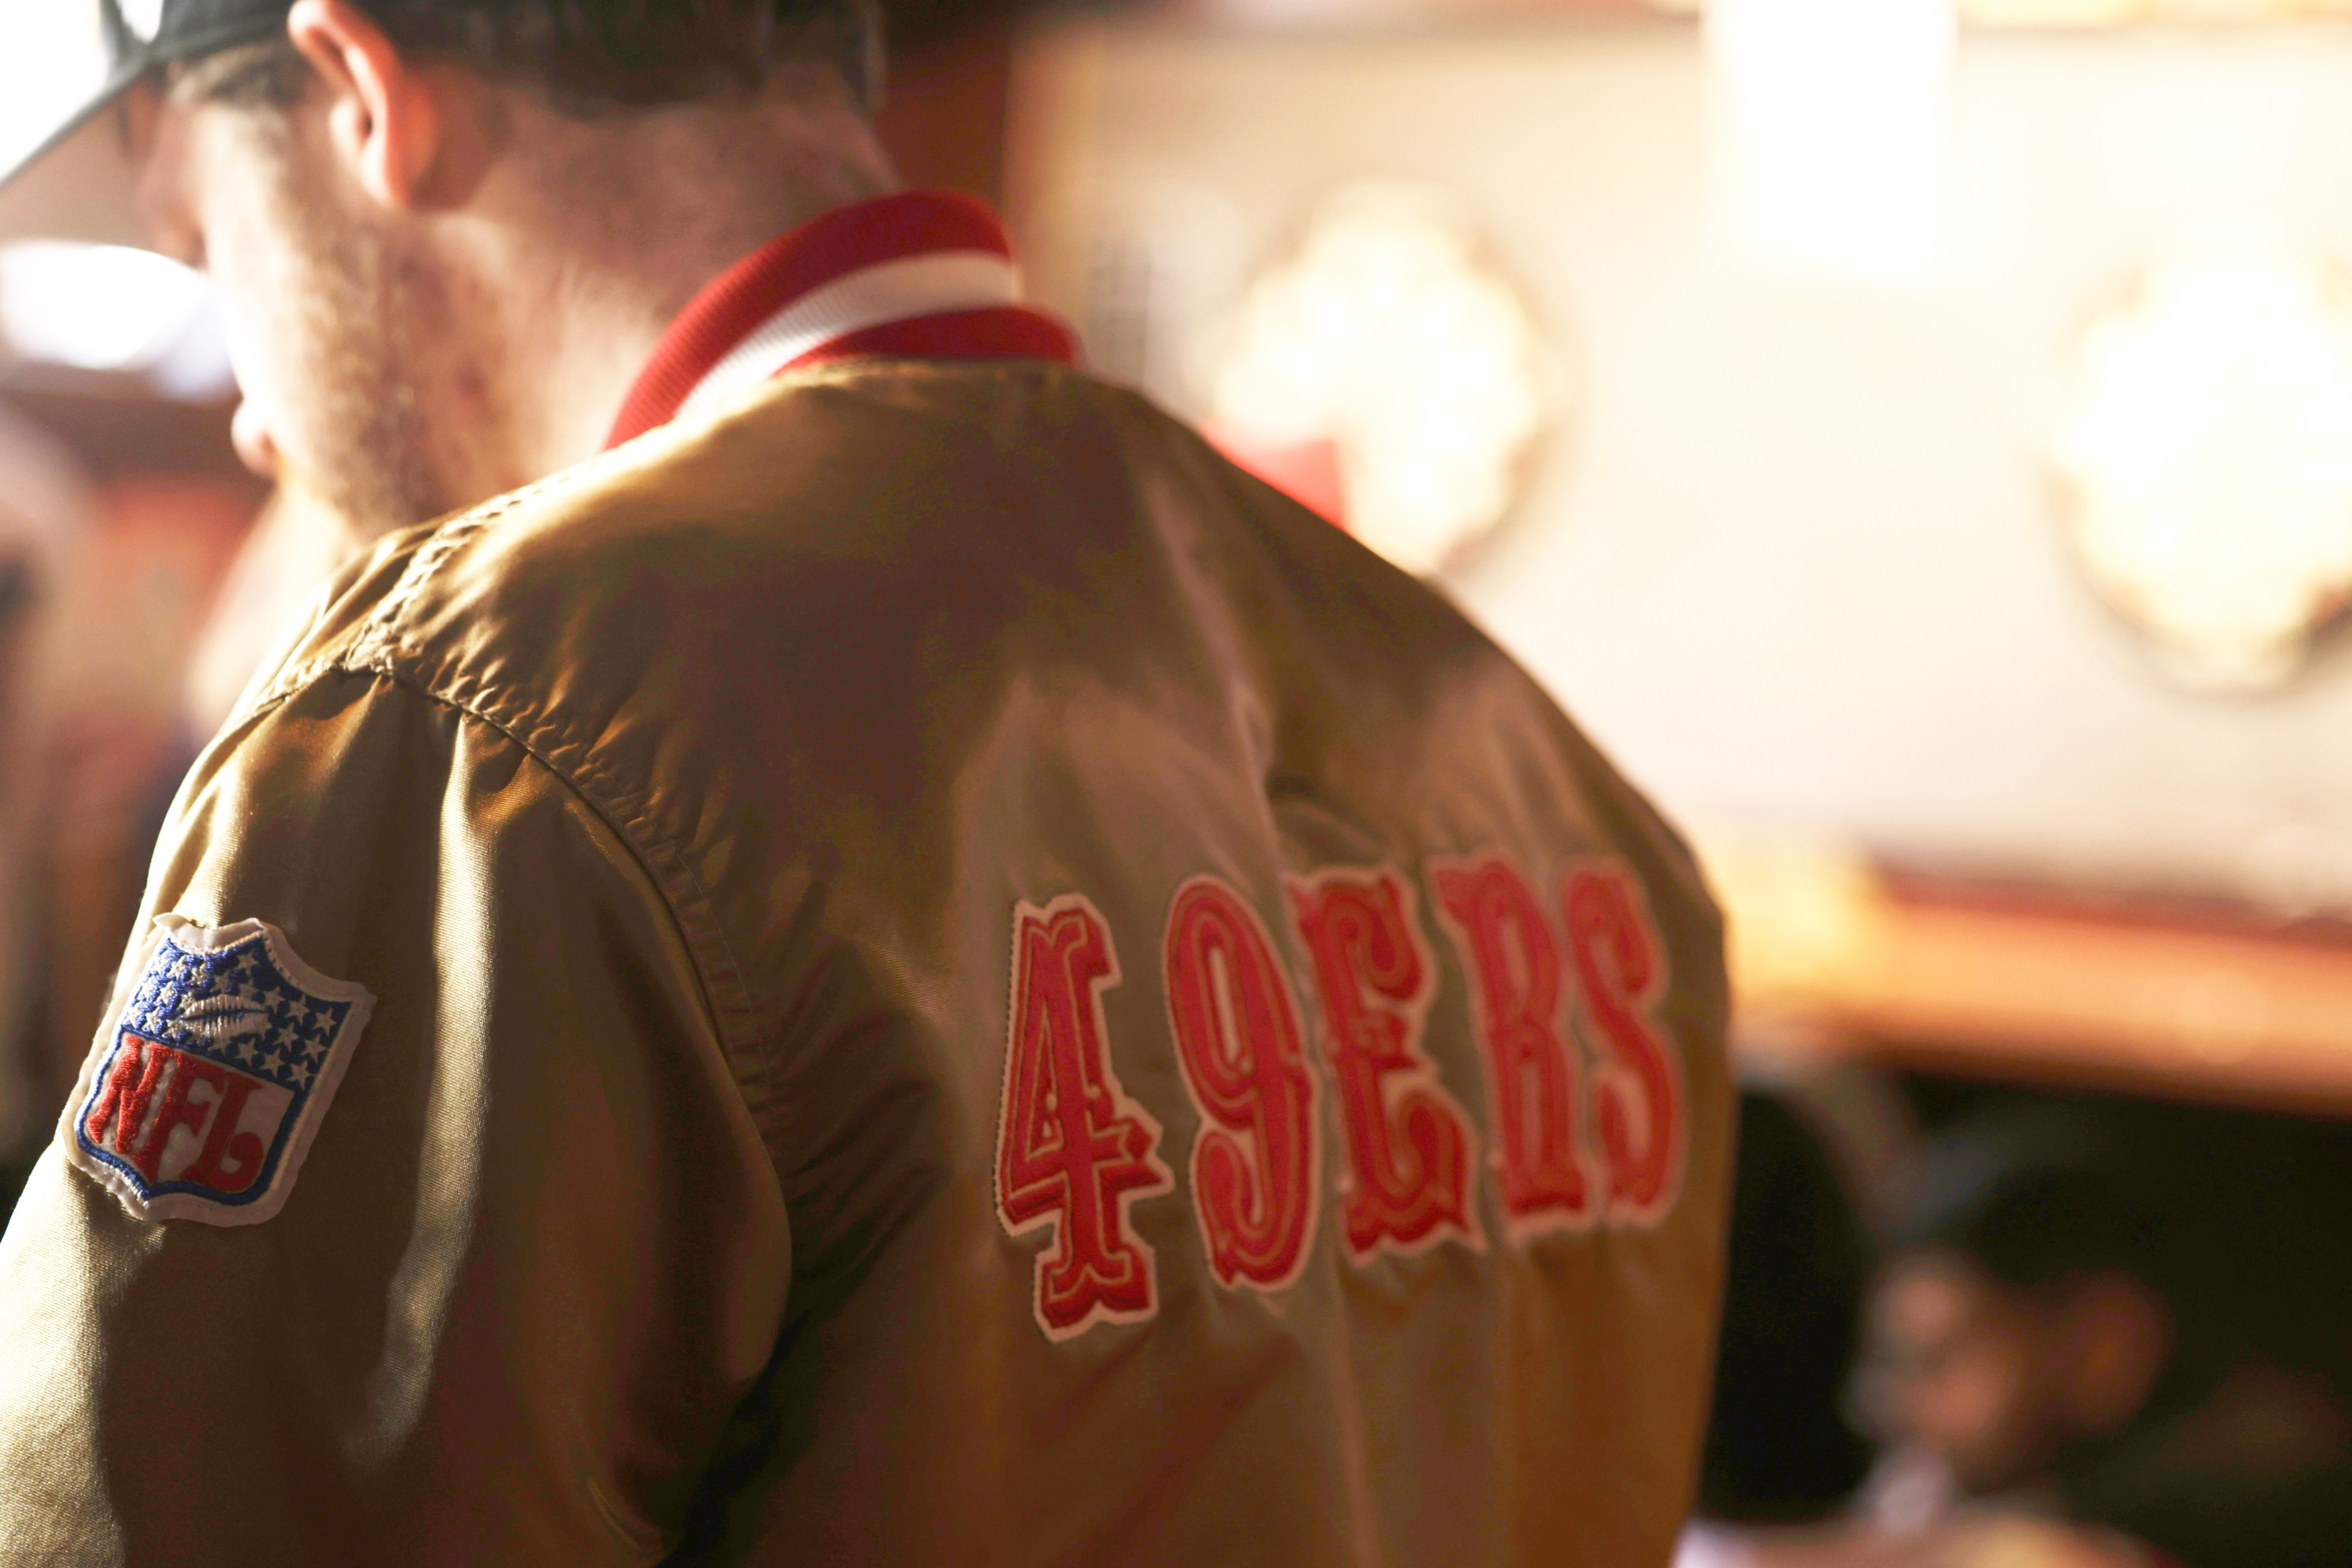 A man wearing a gold 49ers starter jacket